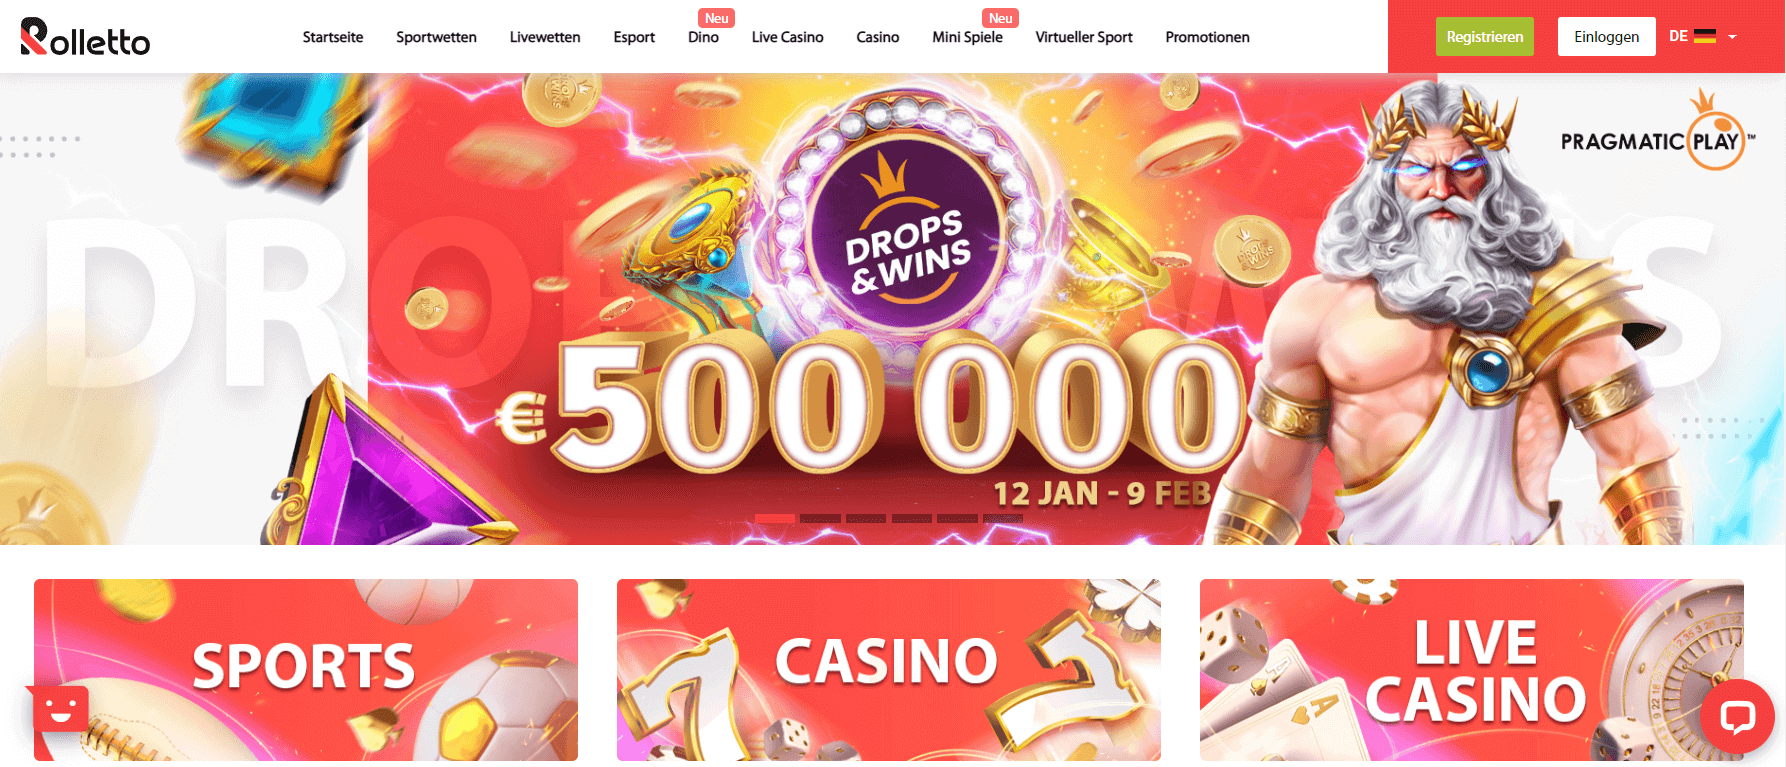 rolletto casino homepage)